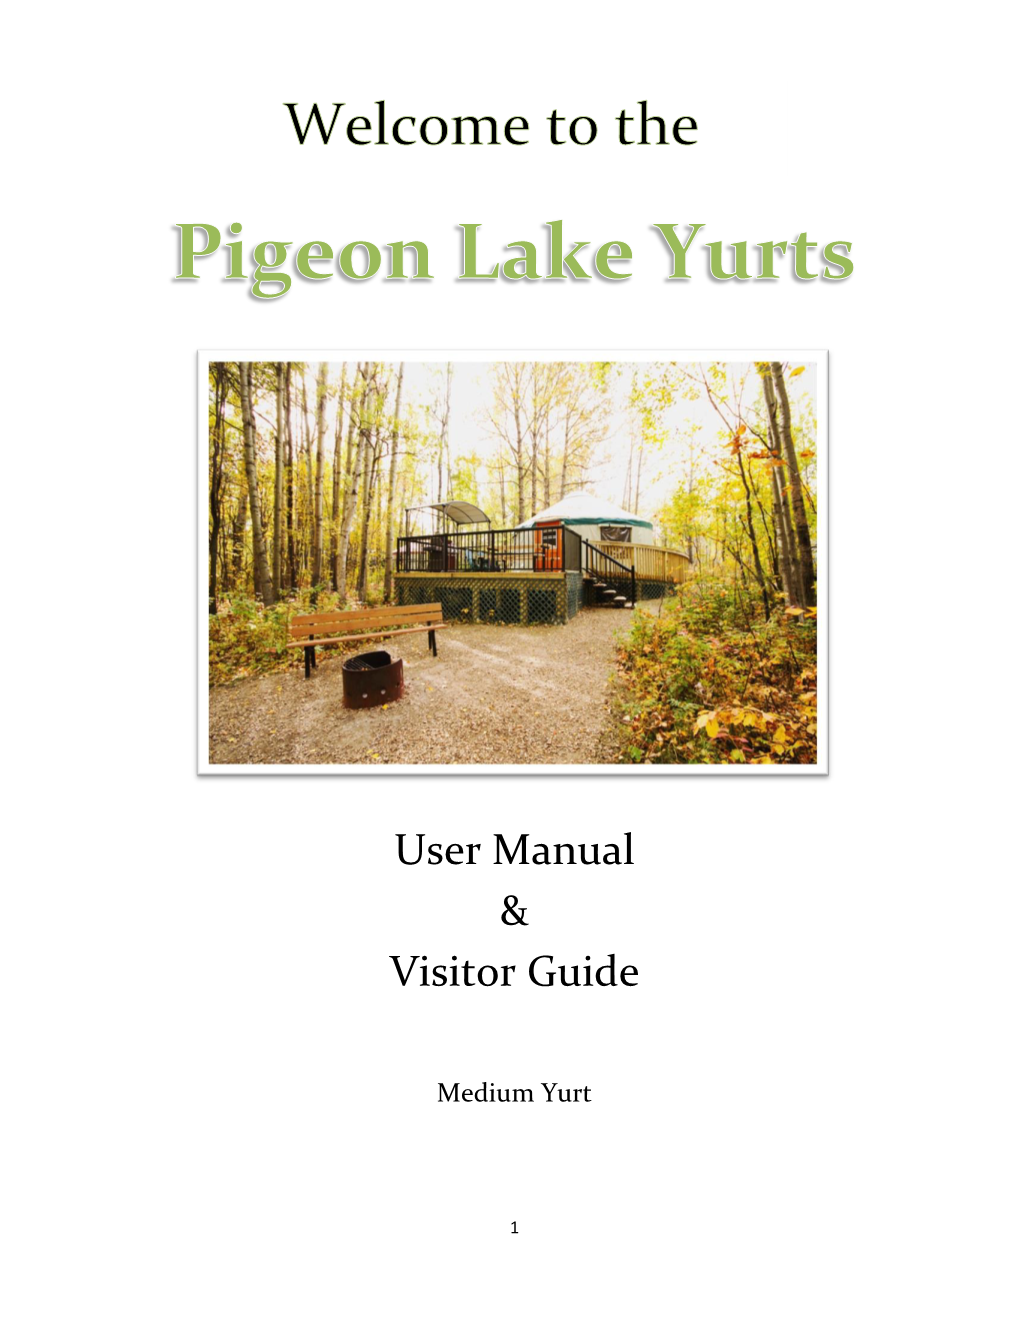 Medium Yurt Manual